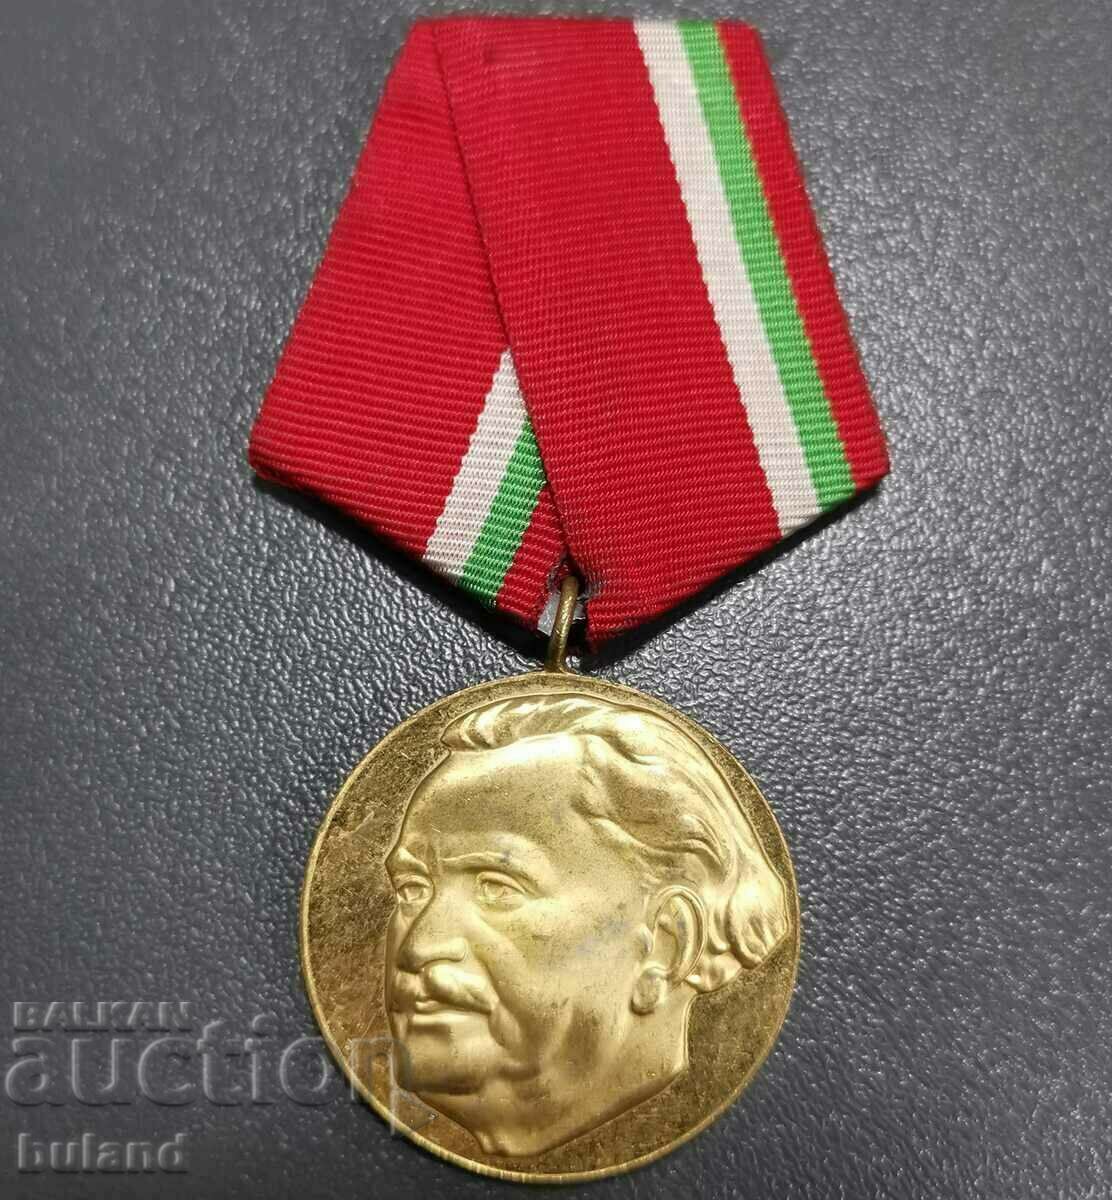 Κοινωνικό Μετάλλιο 100 χρόνια από τη γέννηση του Γκεόργκι Ντιμιτρόφ 1882-1982